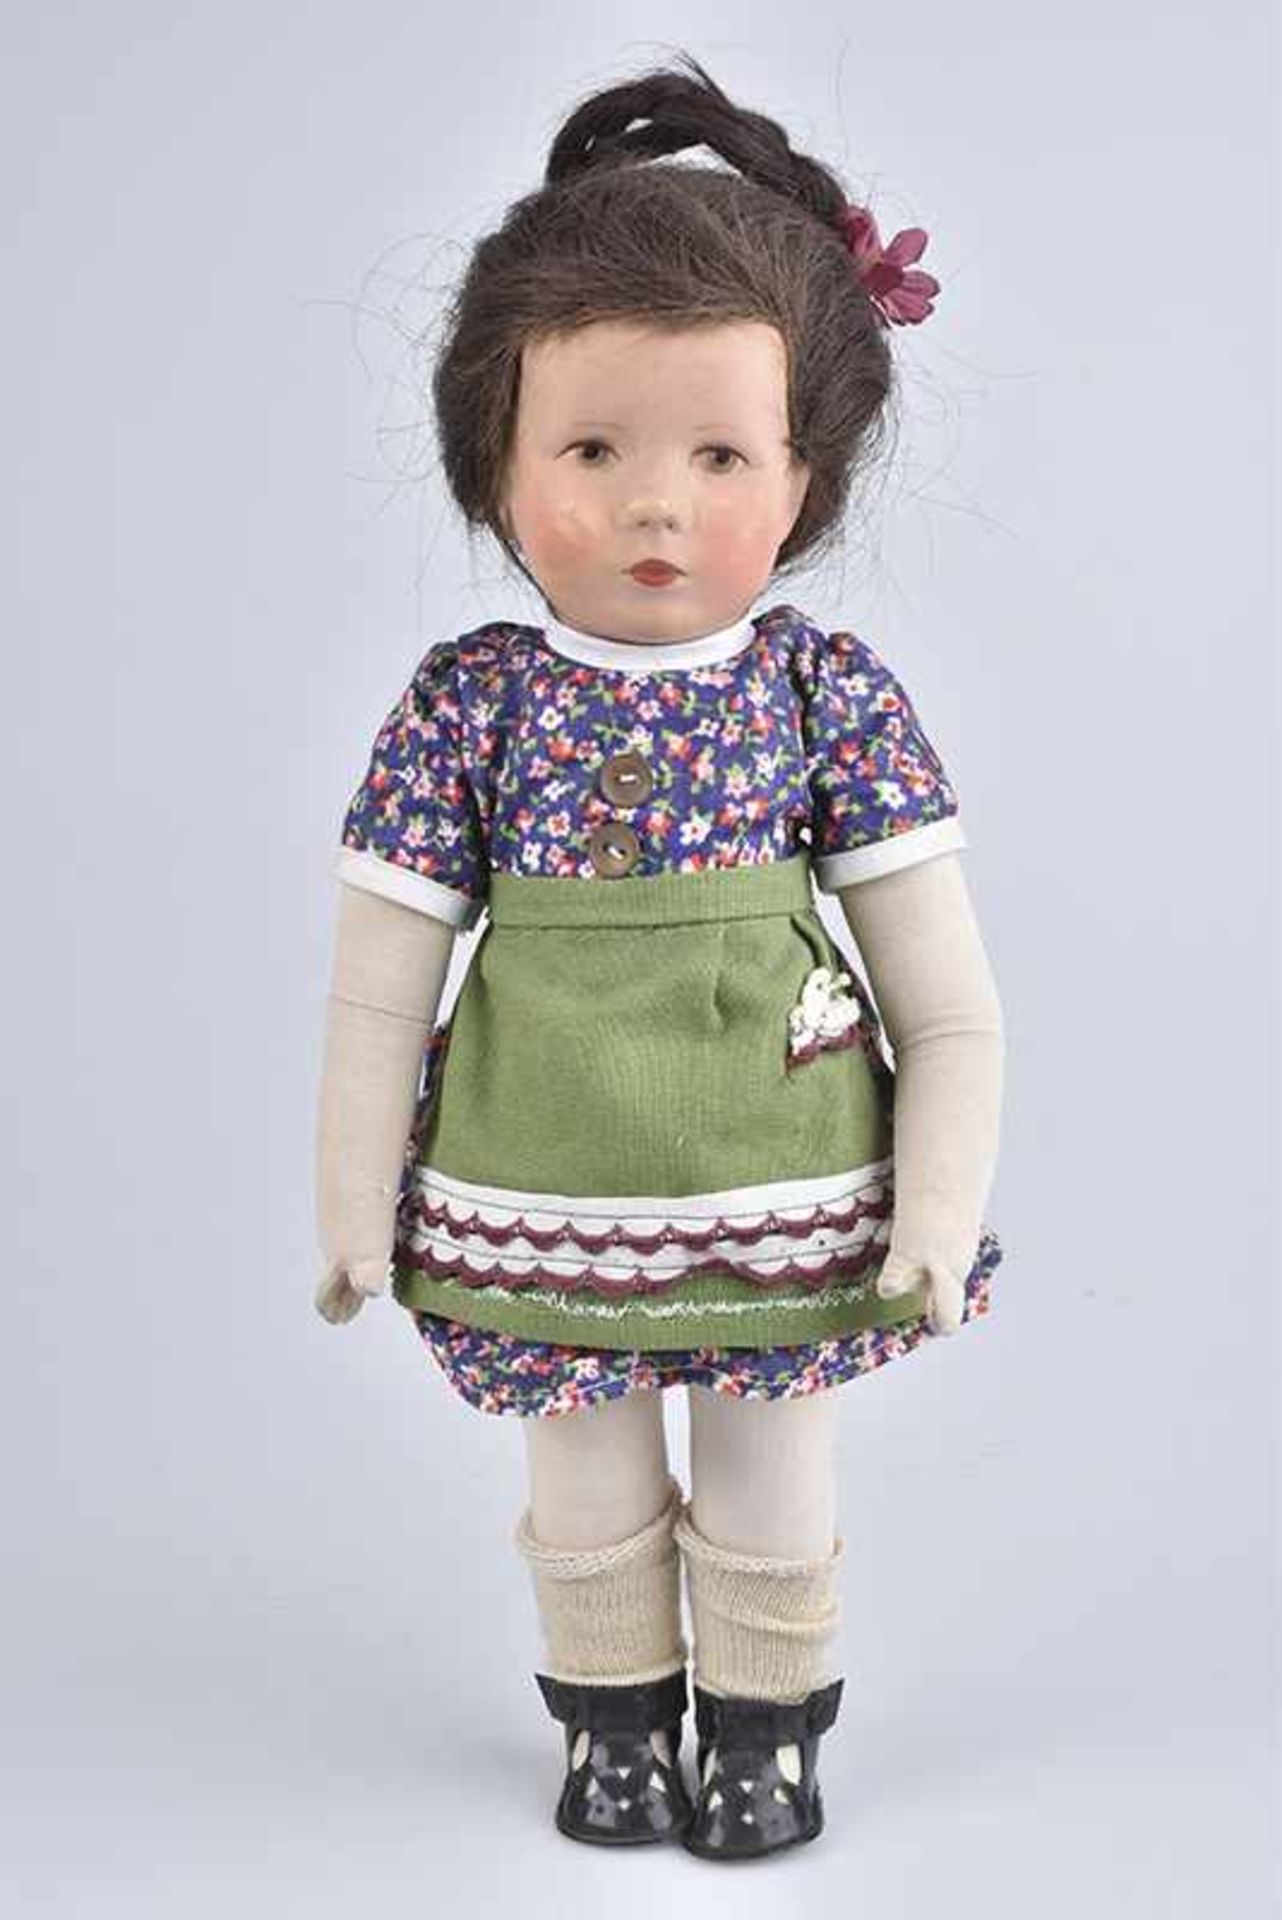 KÄTHE KRUSE Puppe 35 H, 35 cm, Tortulonkurbelkopf, gemalte braun-graue Augen, Lichtpunkte, braune